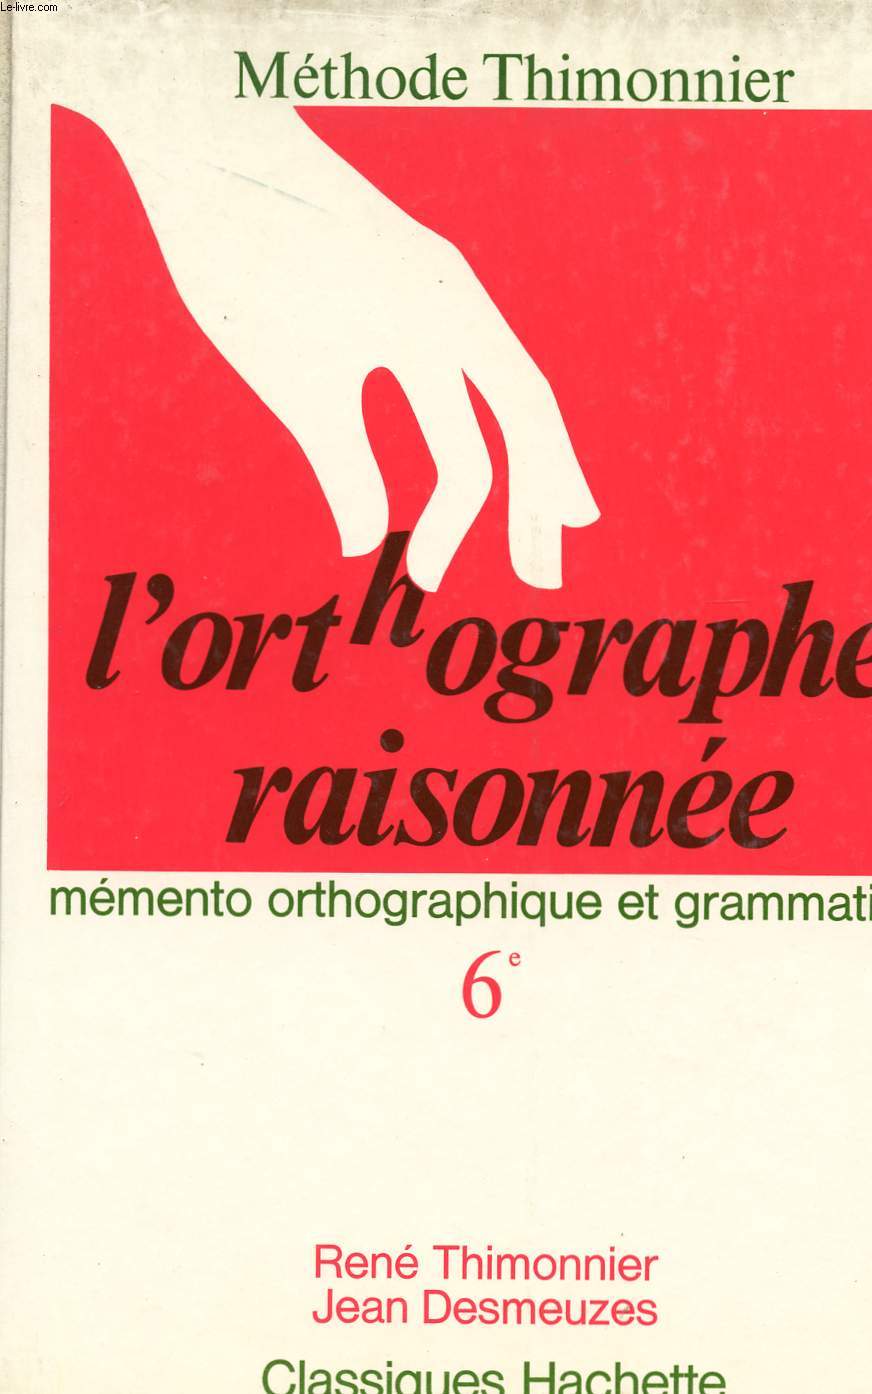 L'ORTHOGRAPHE RAISONNE - MEMENTO ORTHOGRAPHIQUE ET GRAMMATICAL - METHODE THIMONNIER - 6me COLLEGE.